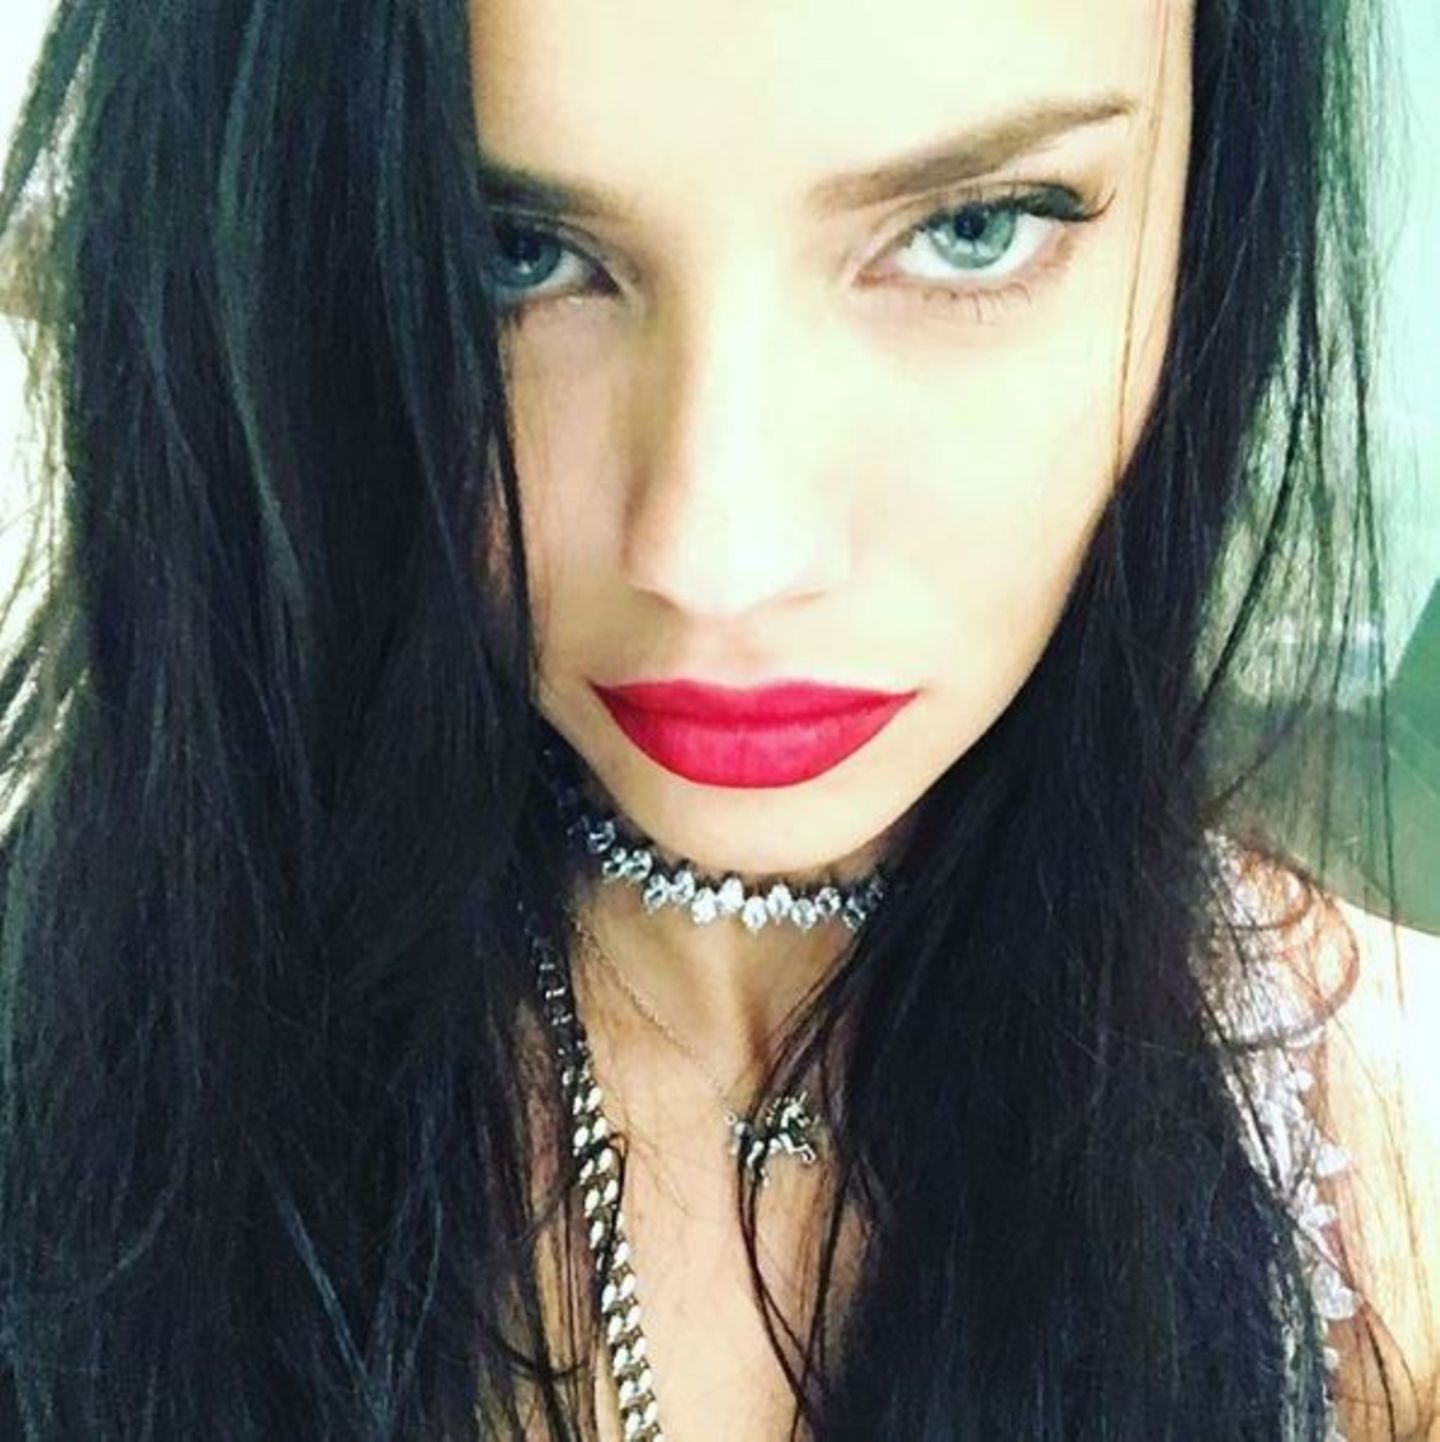 "Happy new Year" - postet Supermodel Adriana Lima und sendet uns ihre heißen grünen Augen und verführerischen roten Schmolllippen.